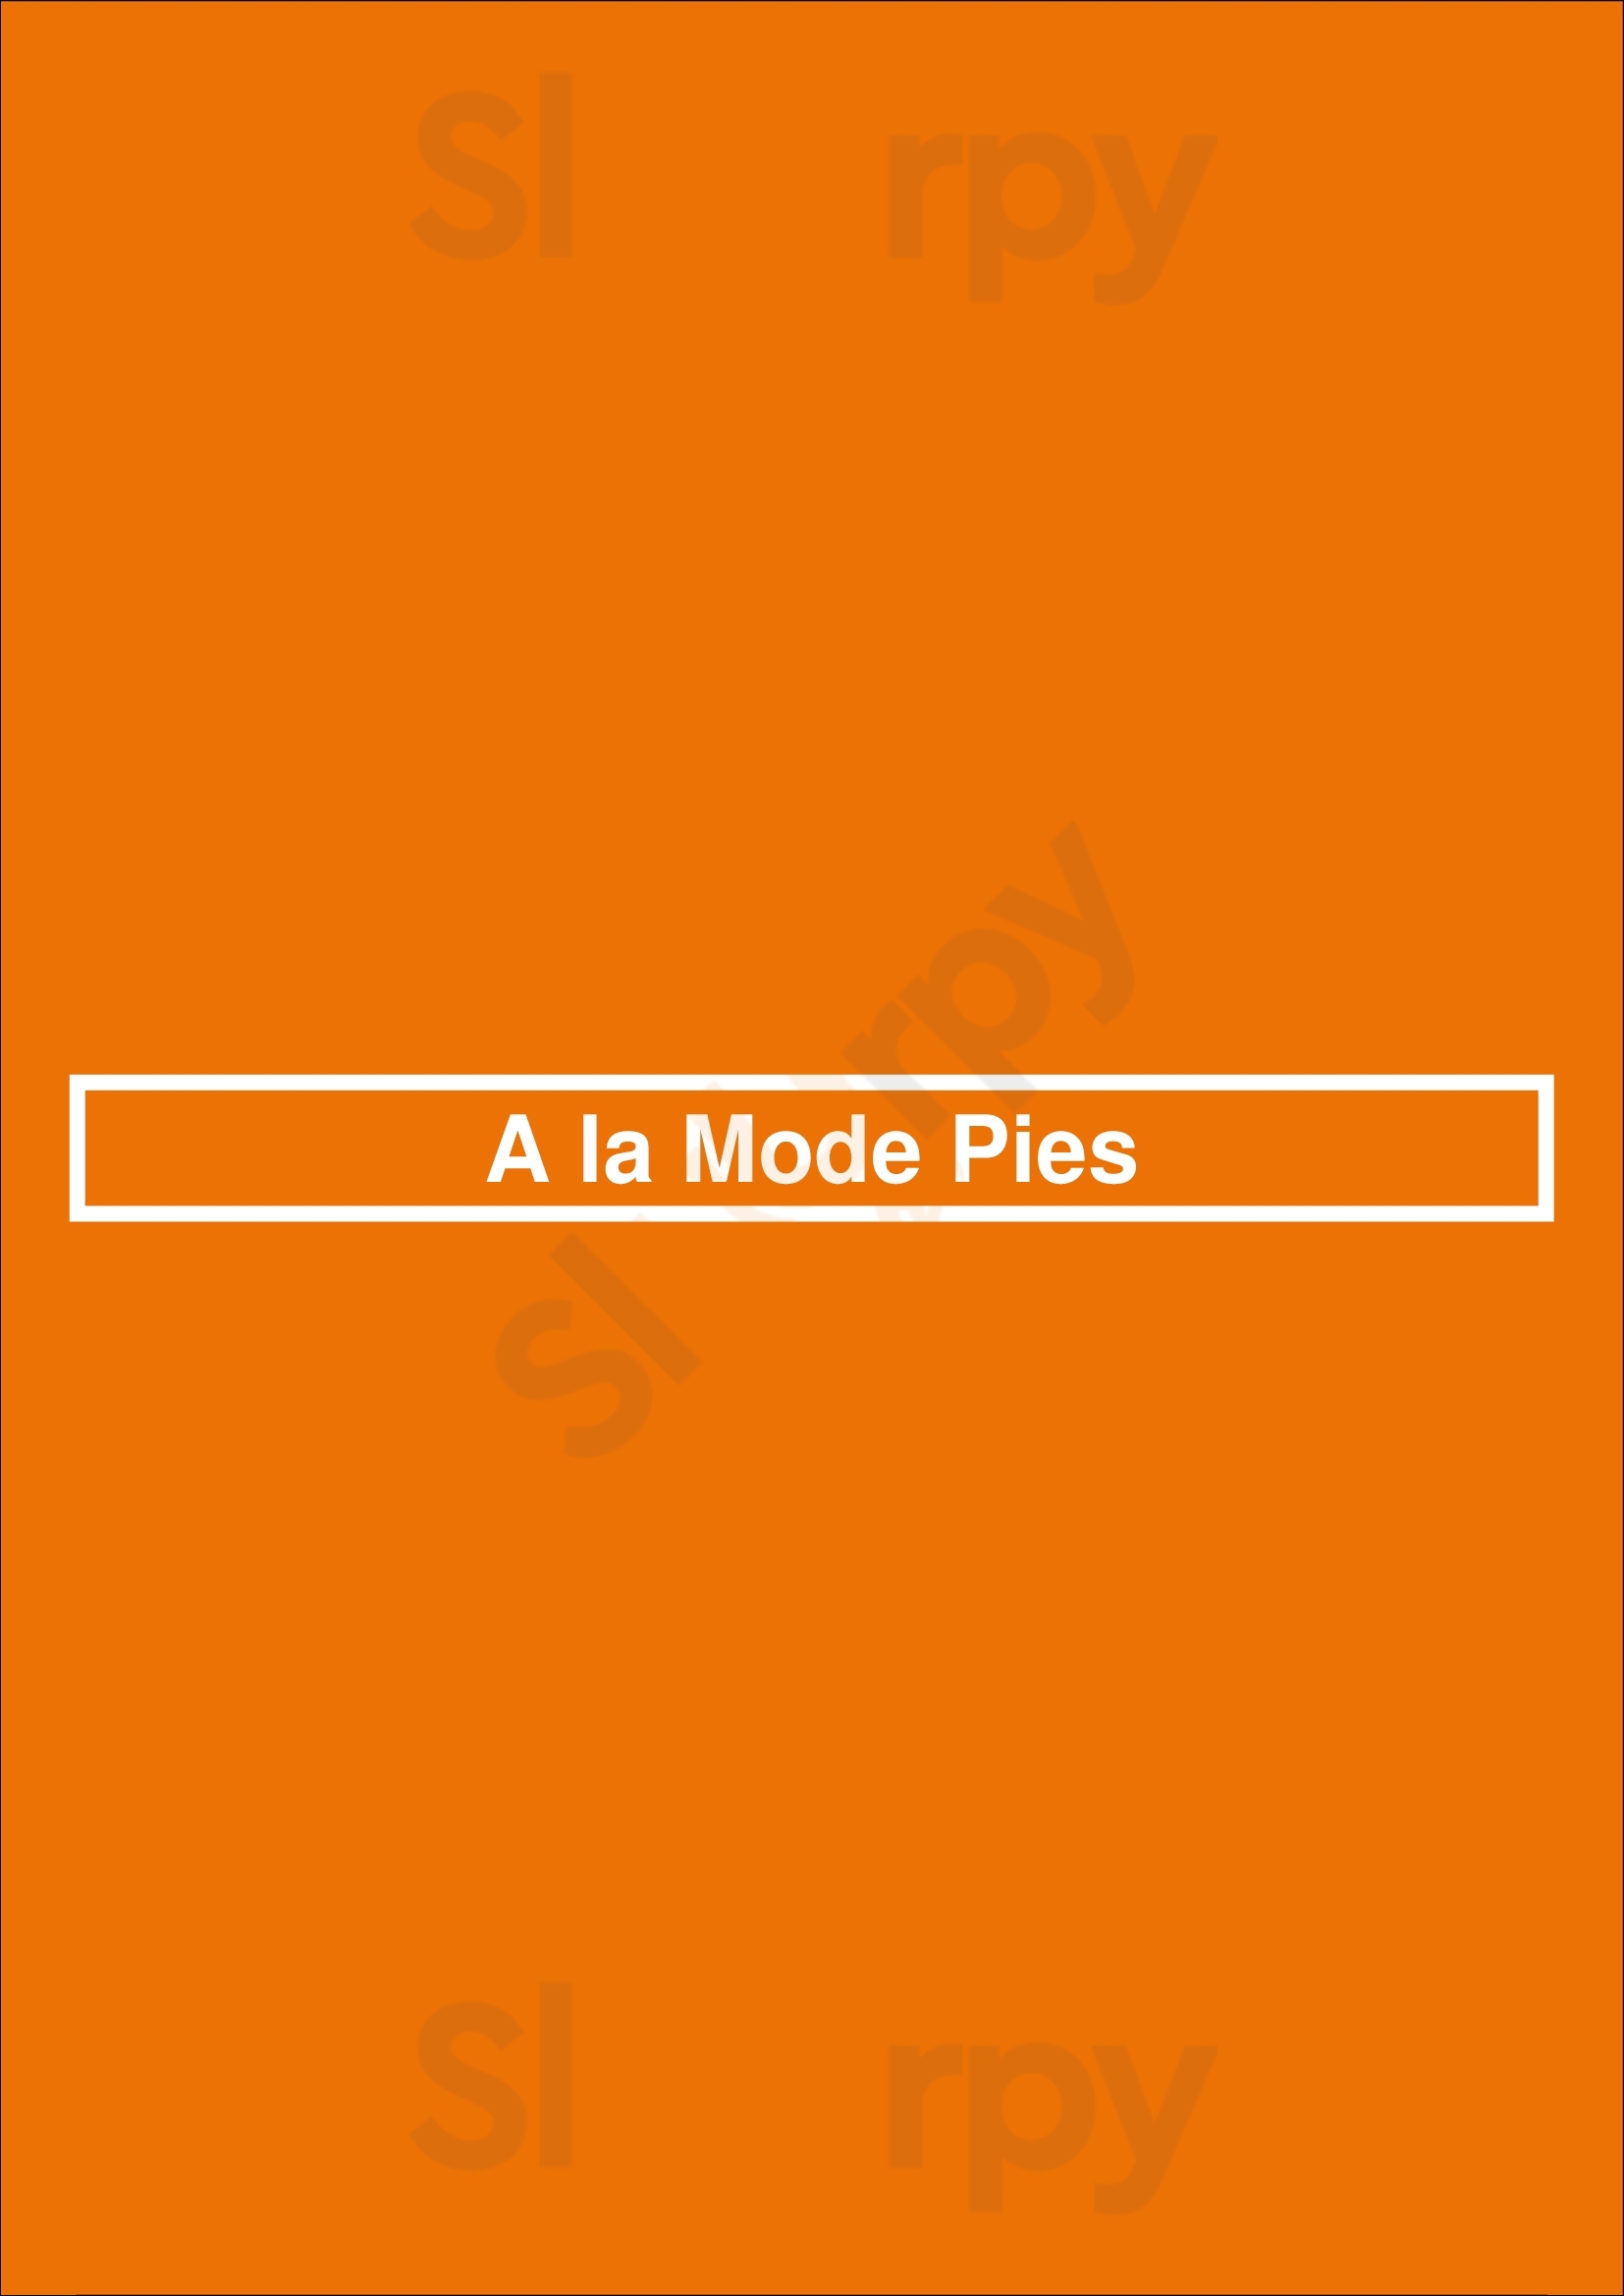 A La Mode Pies Seattle Menu - 1